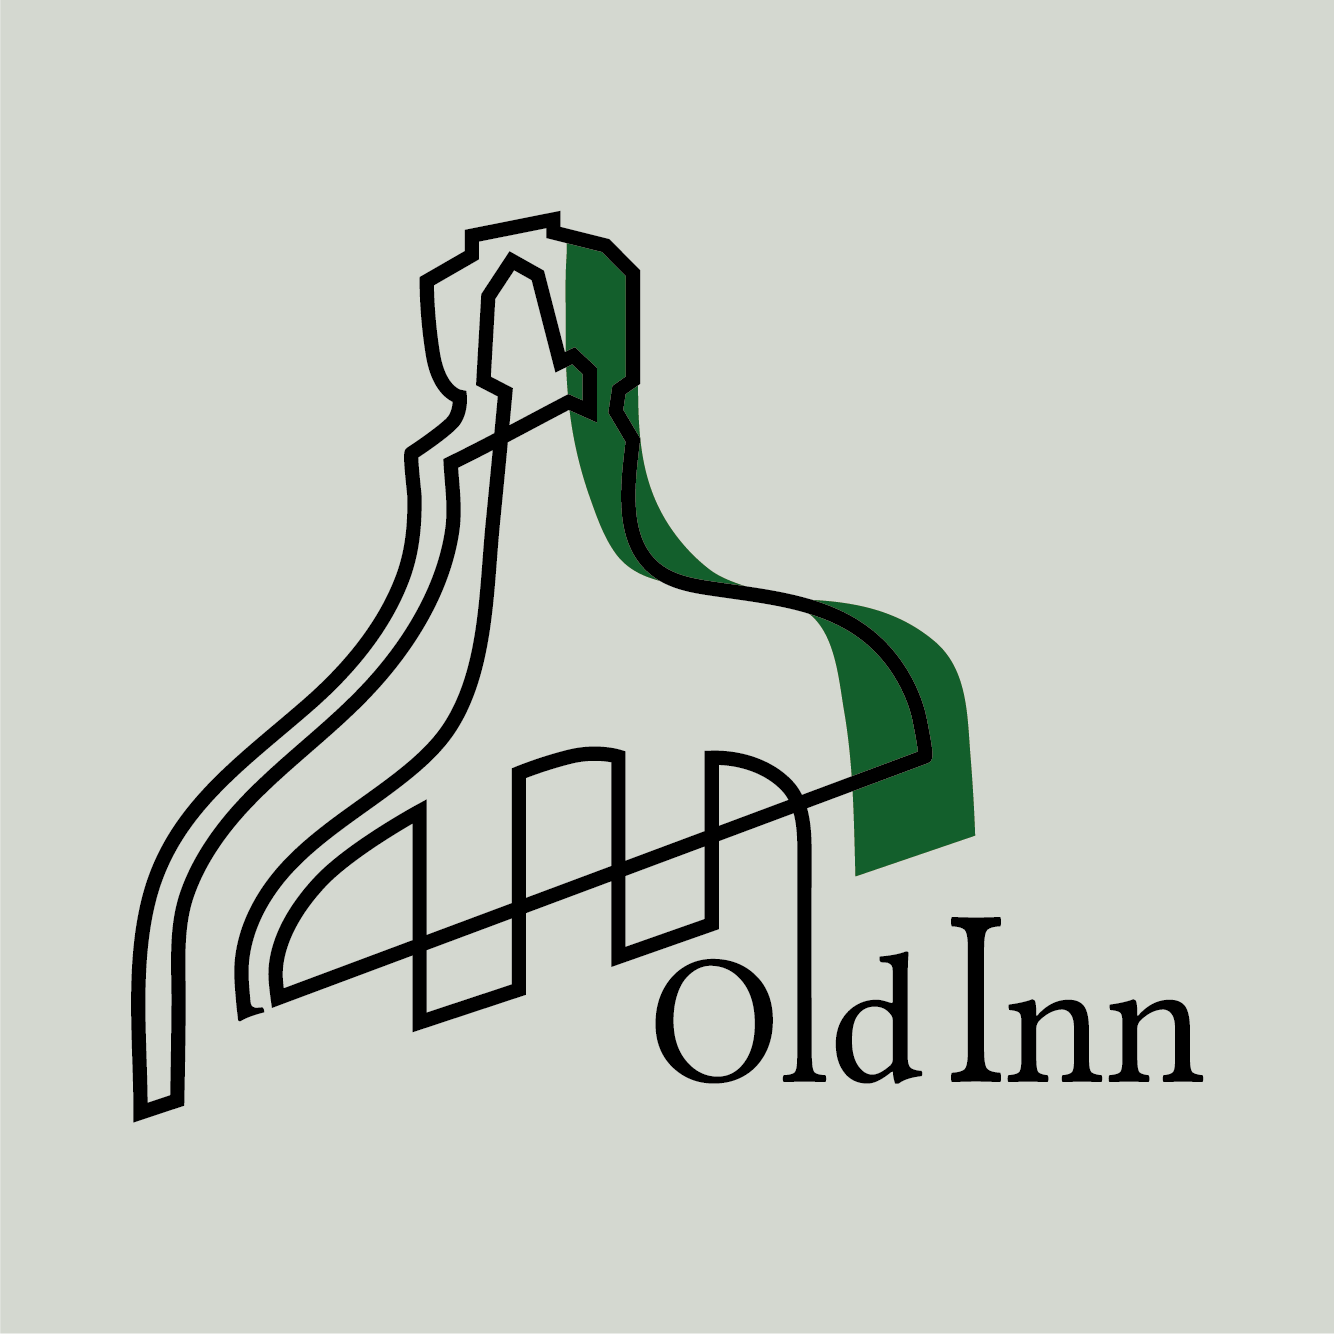 old inn logo